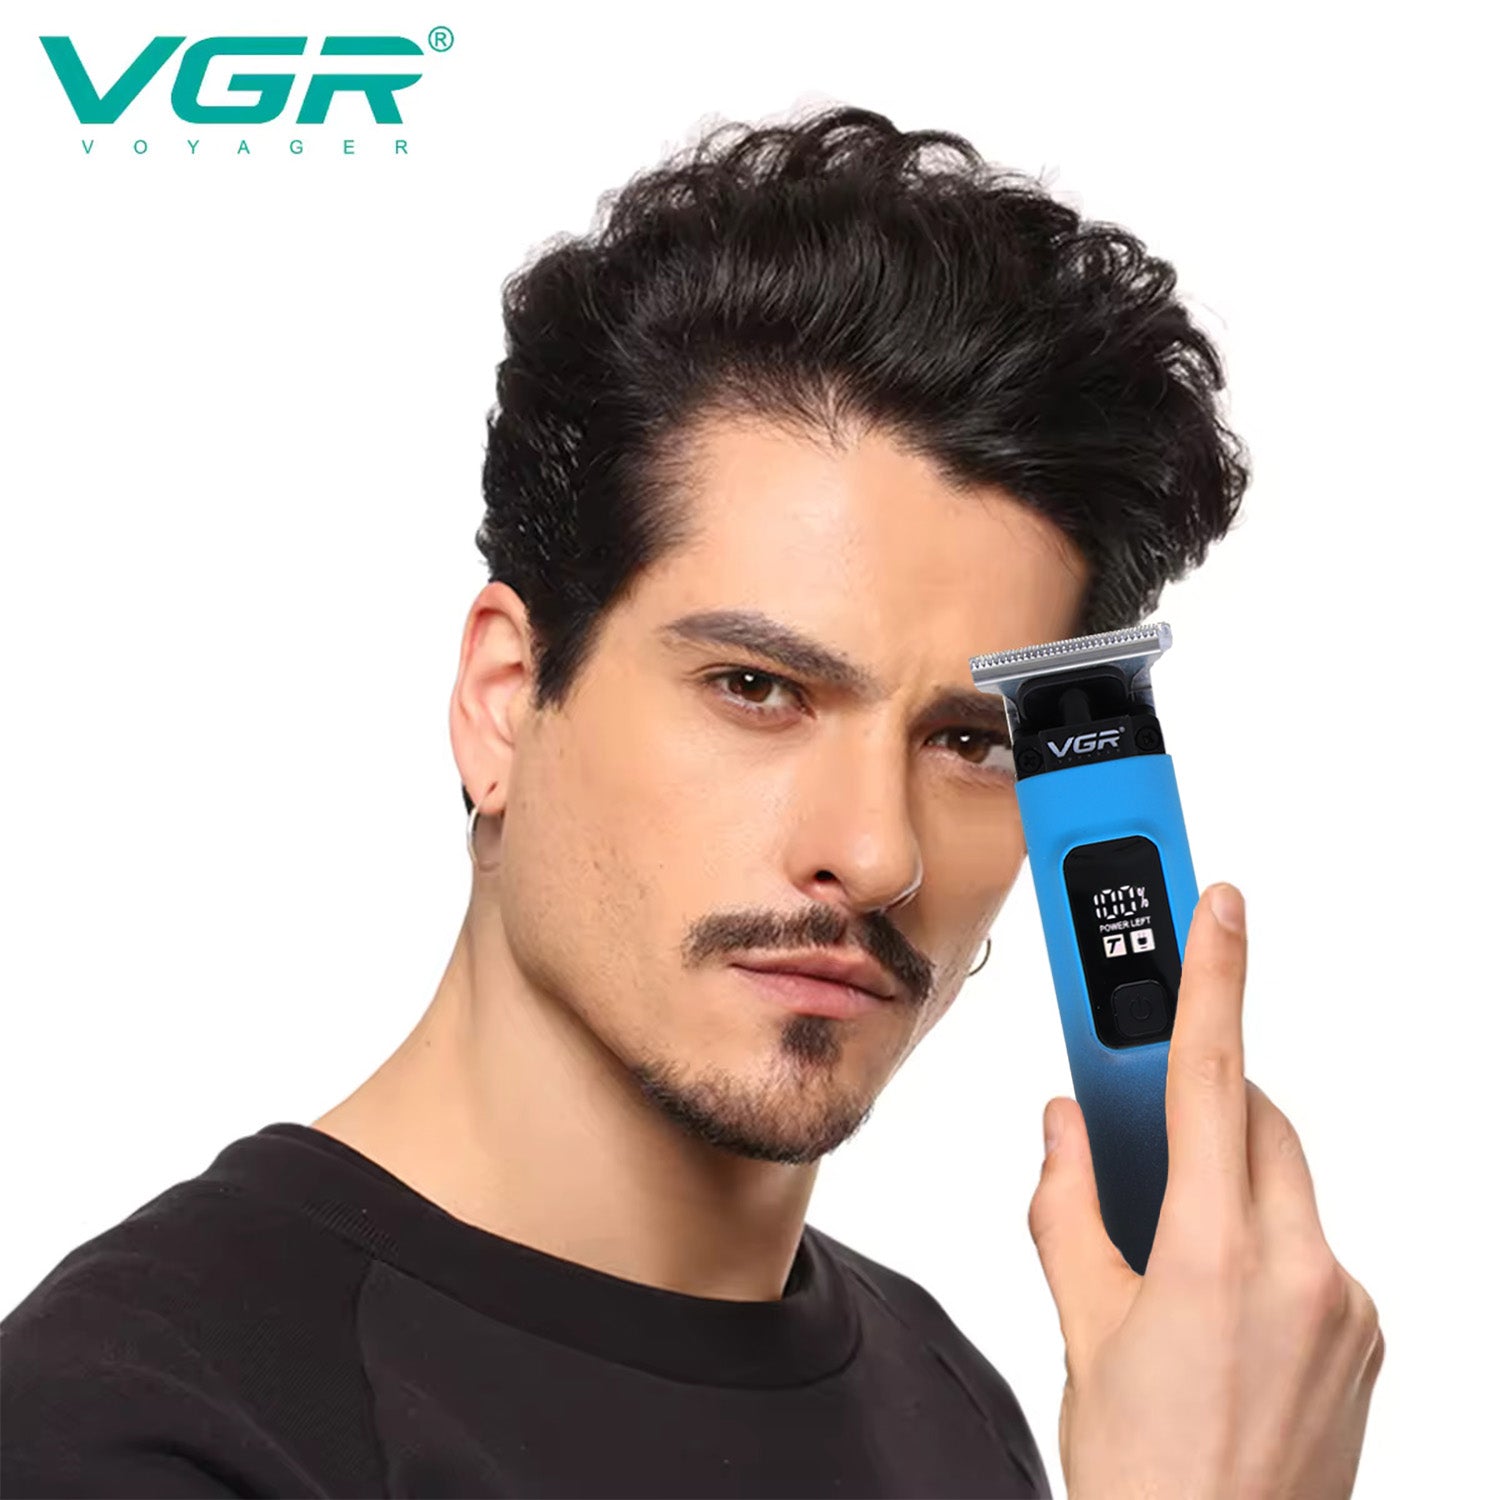 VGR VL-985 Limited Edition Hair Trimmer For Men